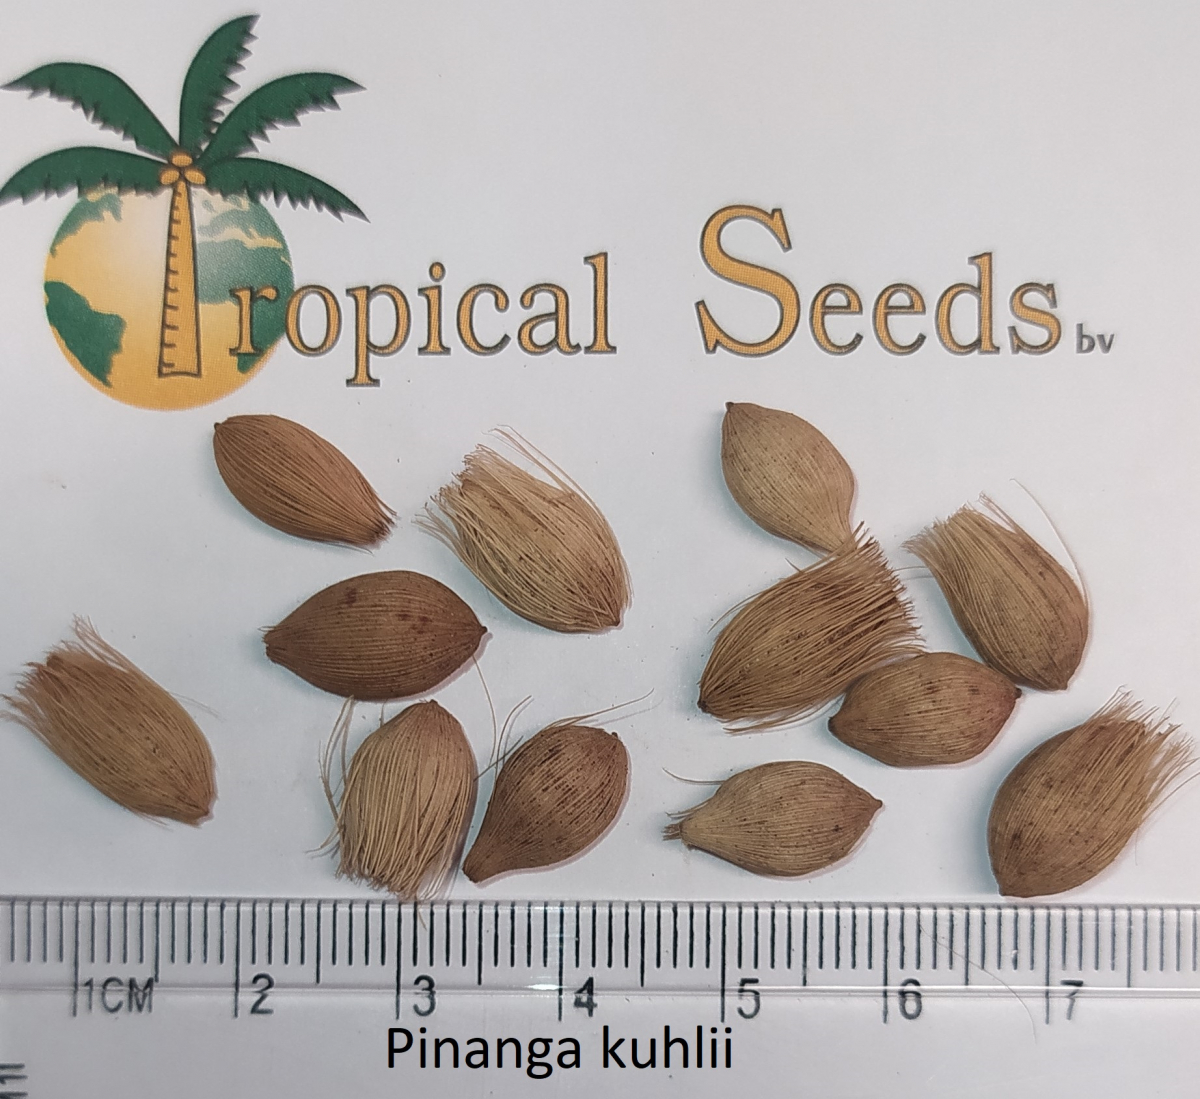 Pinanga kuhlii Seeds